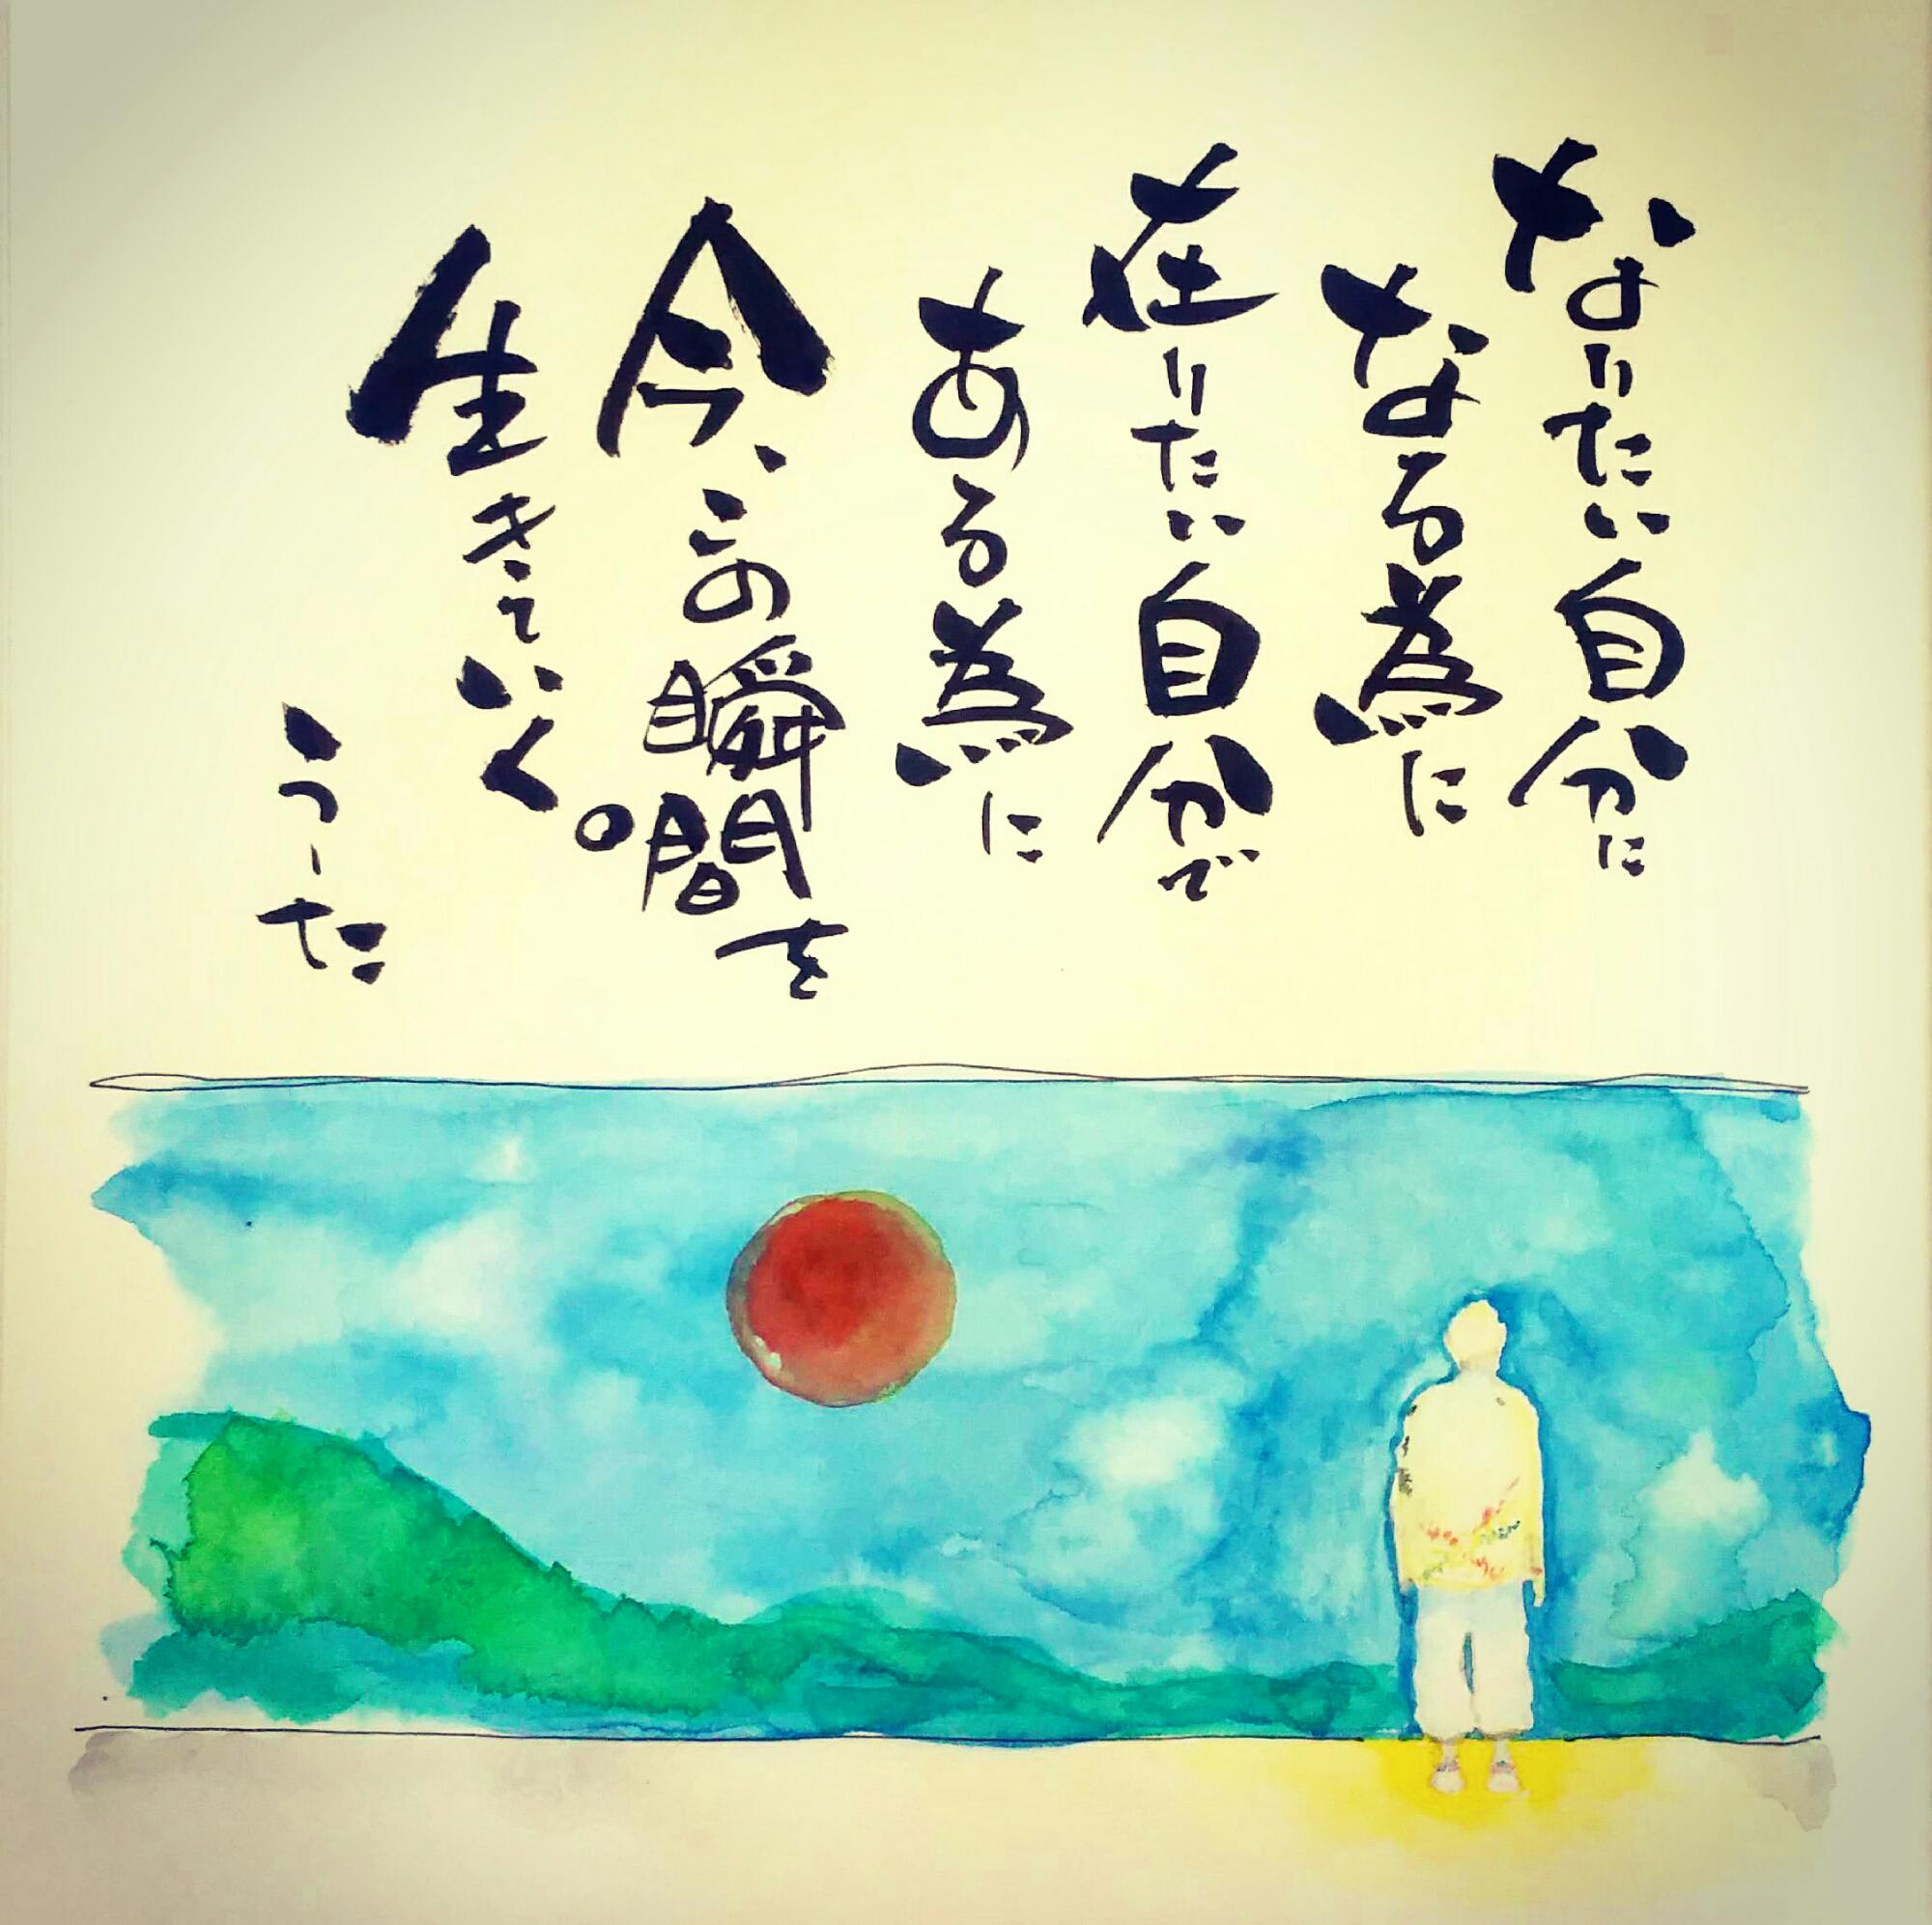 熊本へ届け 超特大詩作品ライブペイントinわっしょい百万夏祭り16 詩太 ウータ Shingo Kimura